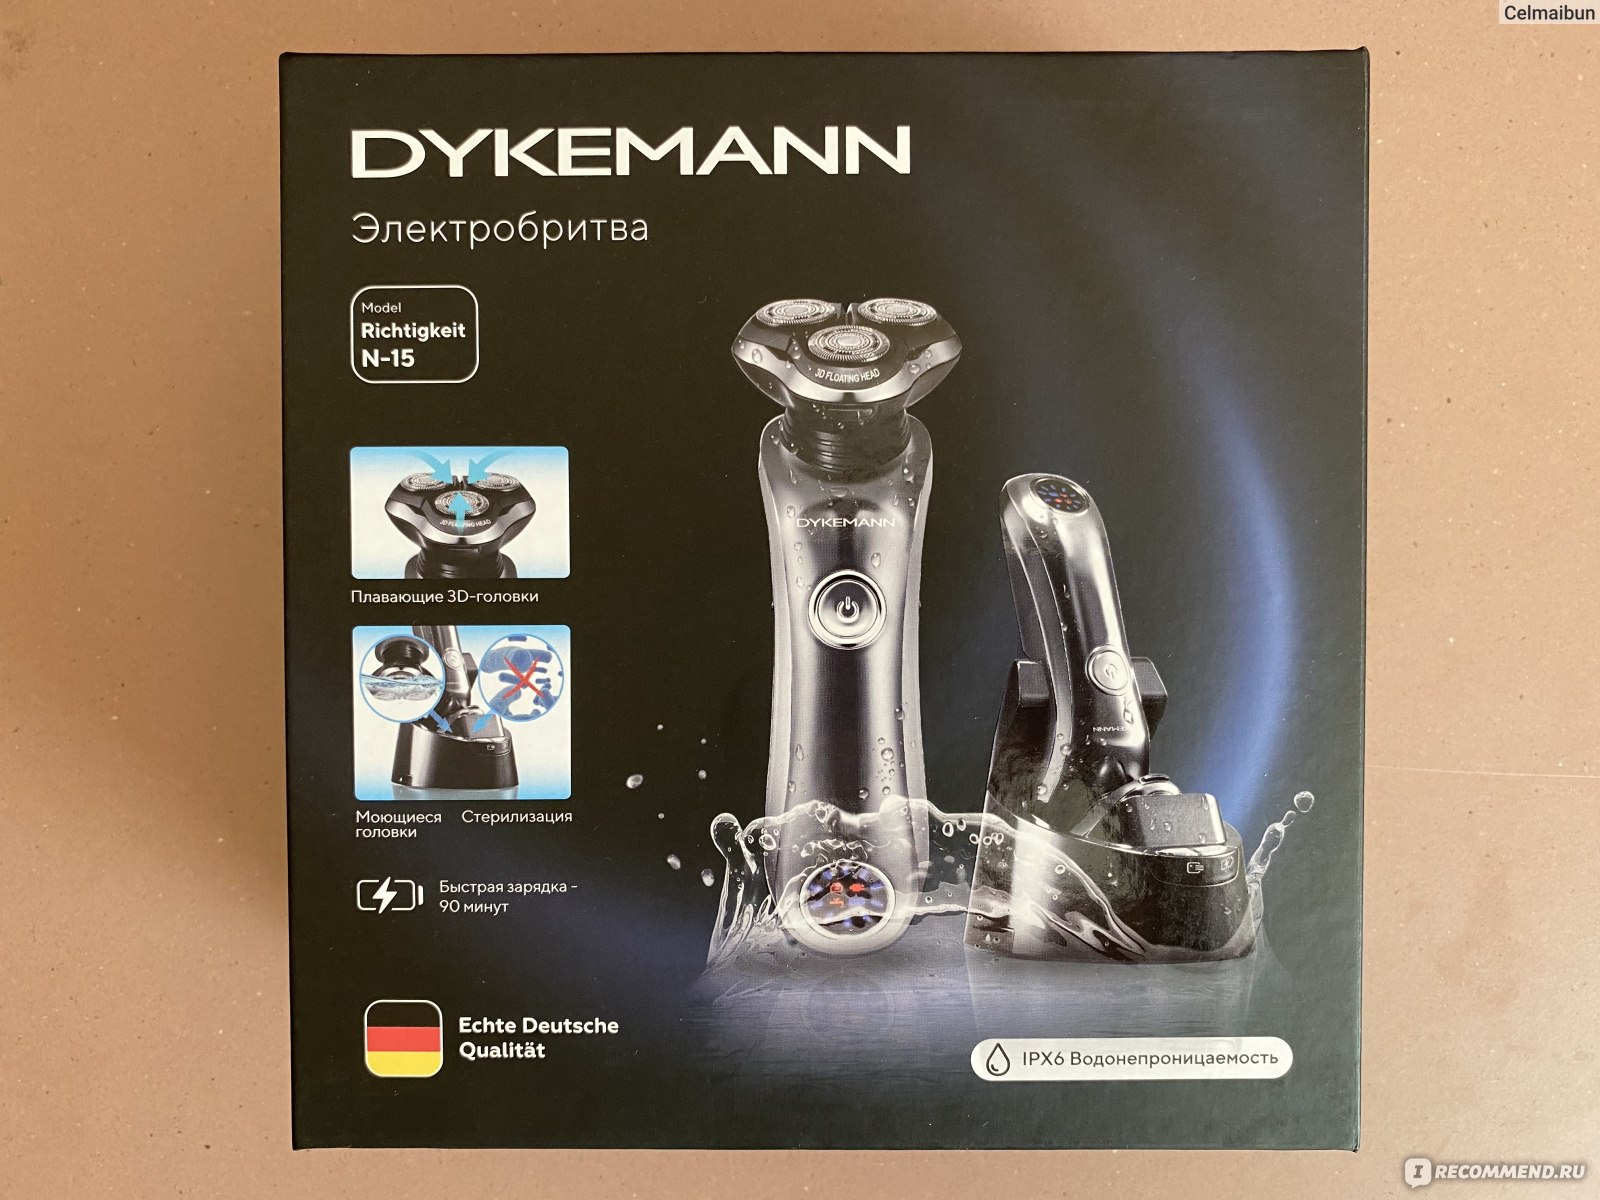 Dykemann sternenschein g 51. Dykemann Richtigkeit n-15 головка. Триммер Dykemann. Эл.бритва Dykemann Richtigkeit n-15. Dykemann Richtigkeit n-15 ножи.